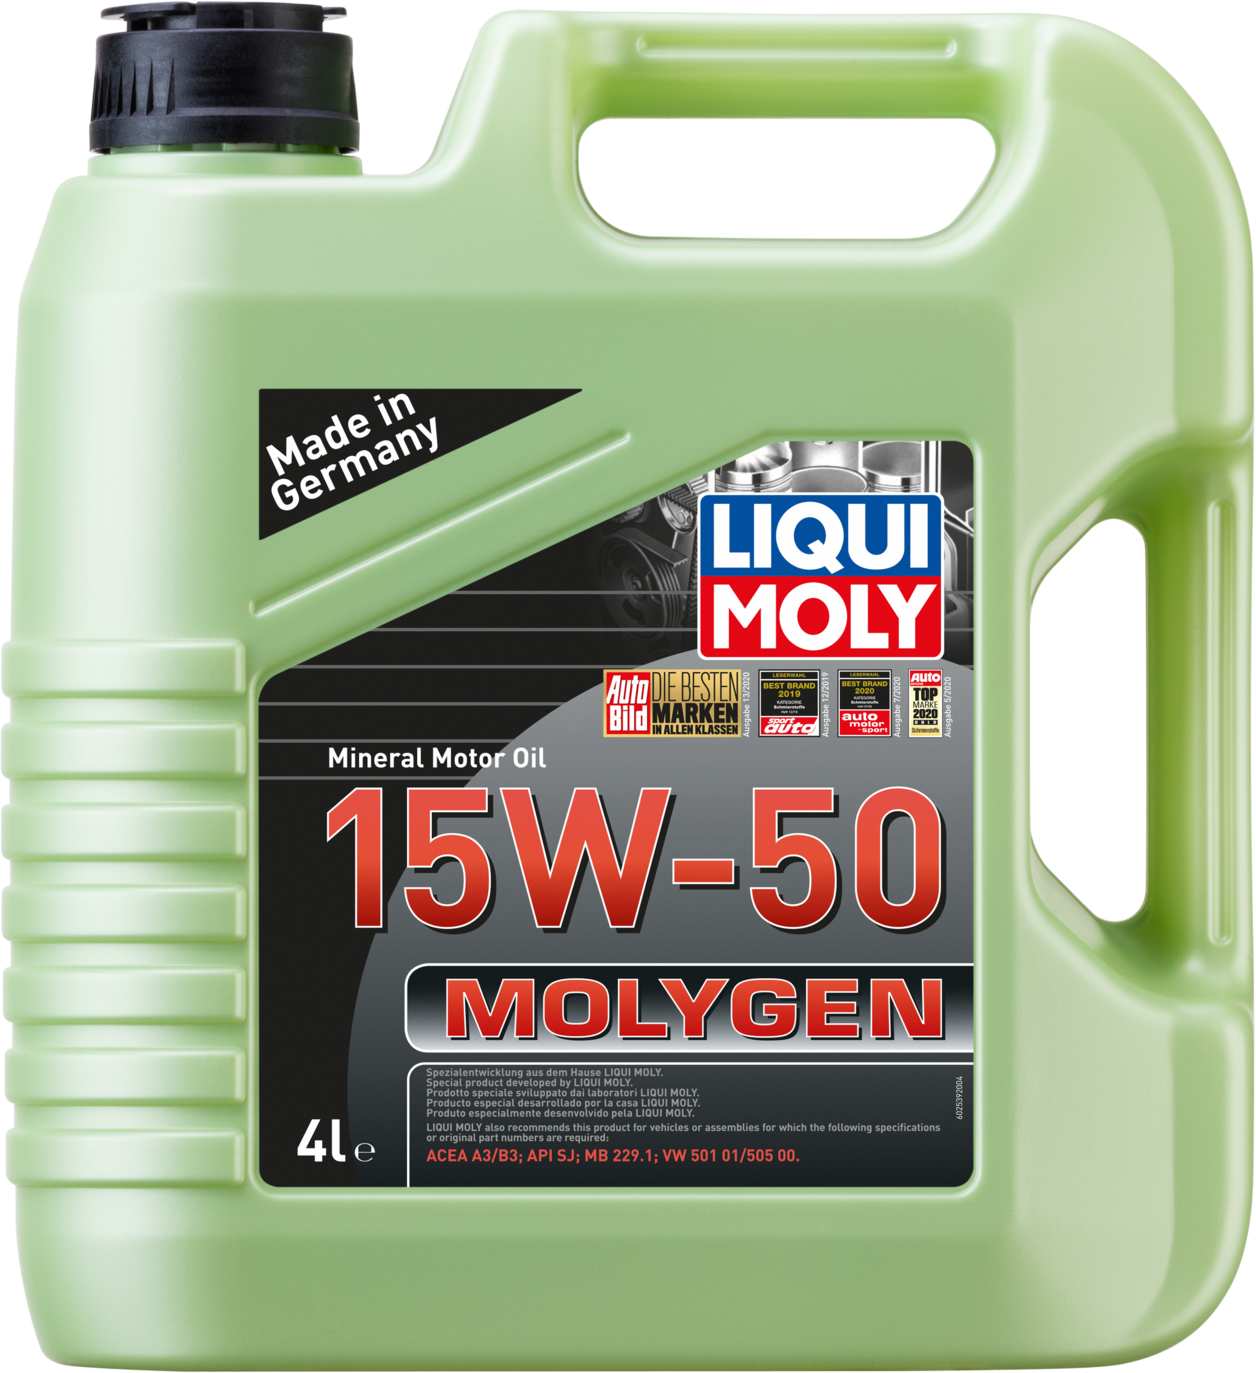 Liqui Moly Molygen 15W-50, 4 lt